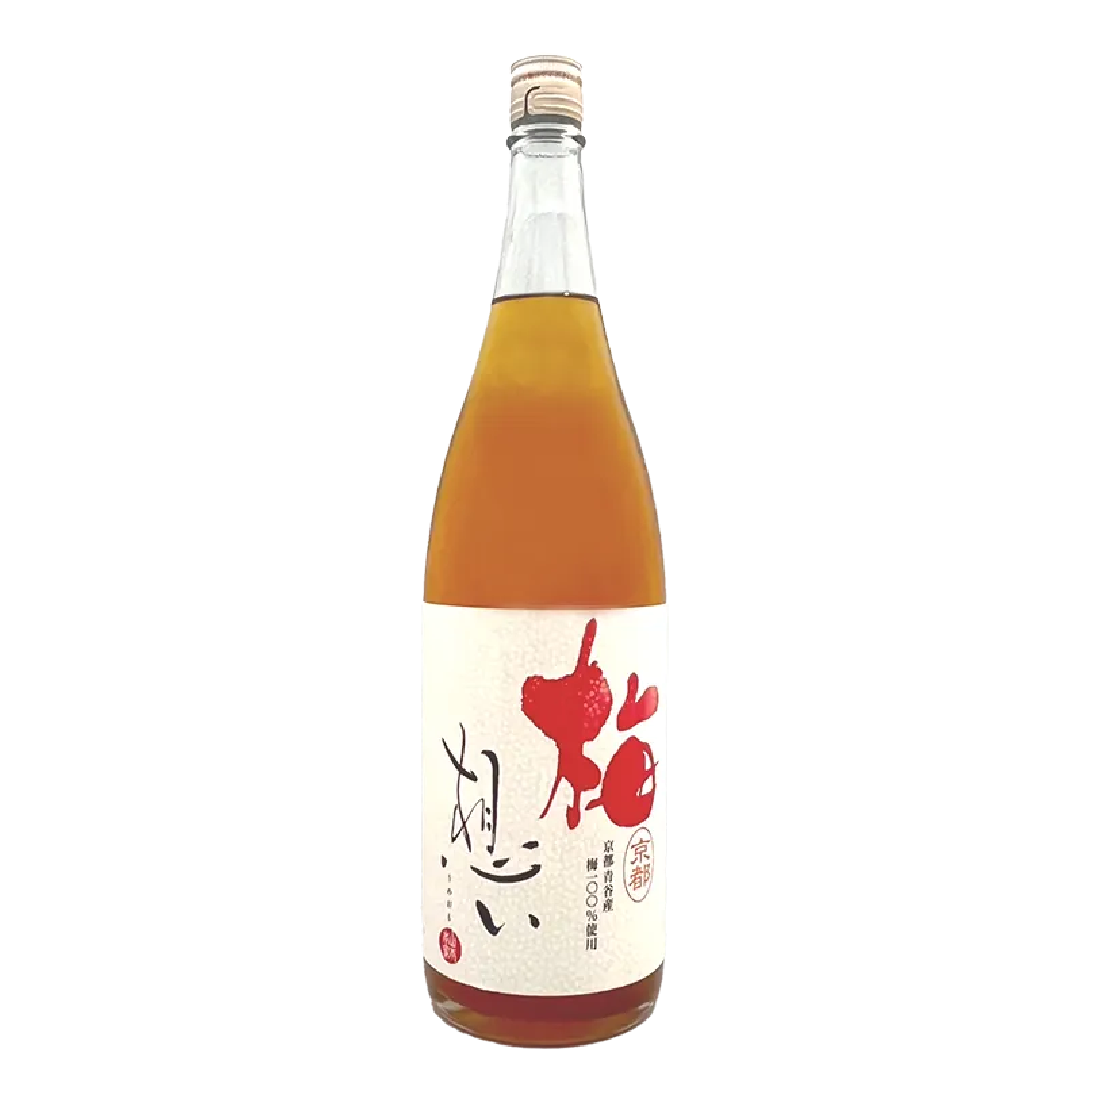 神聖梅酒1.8L - 島羽| WINGISLANDS